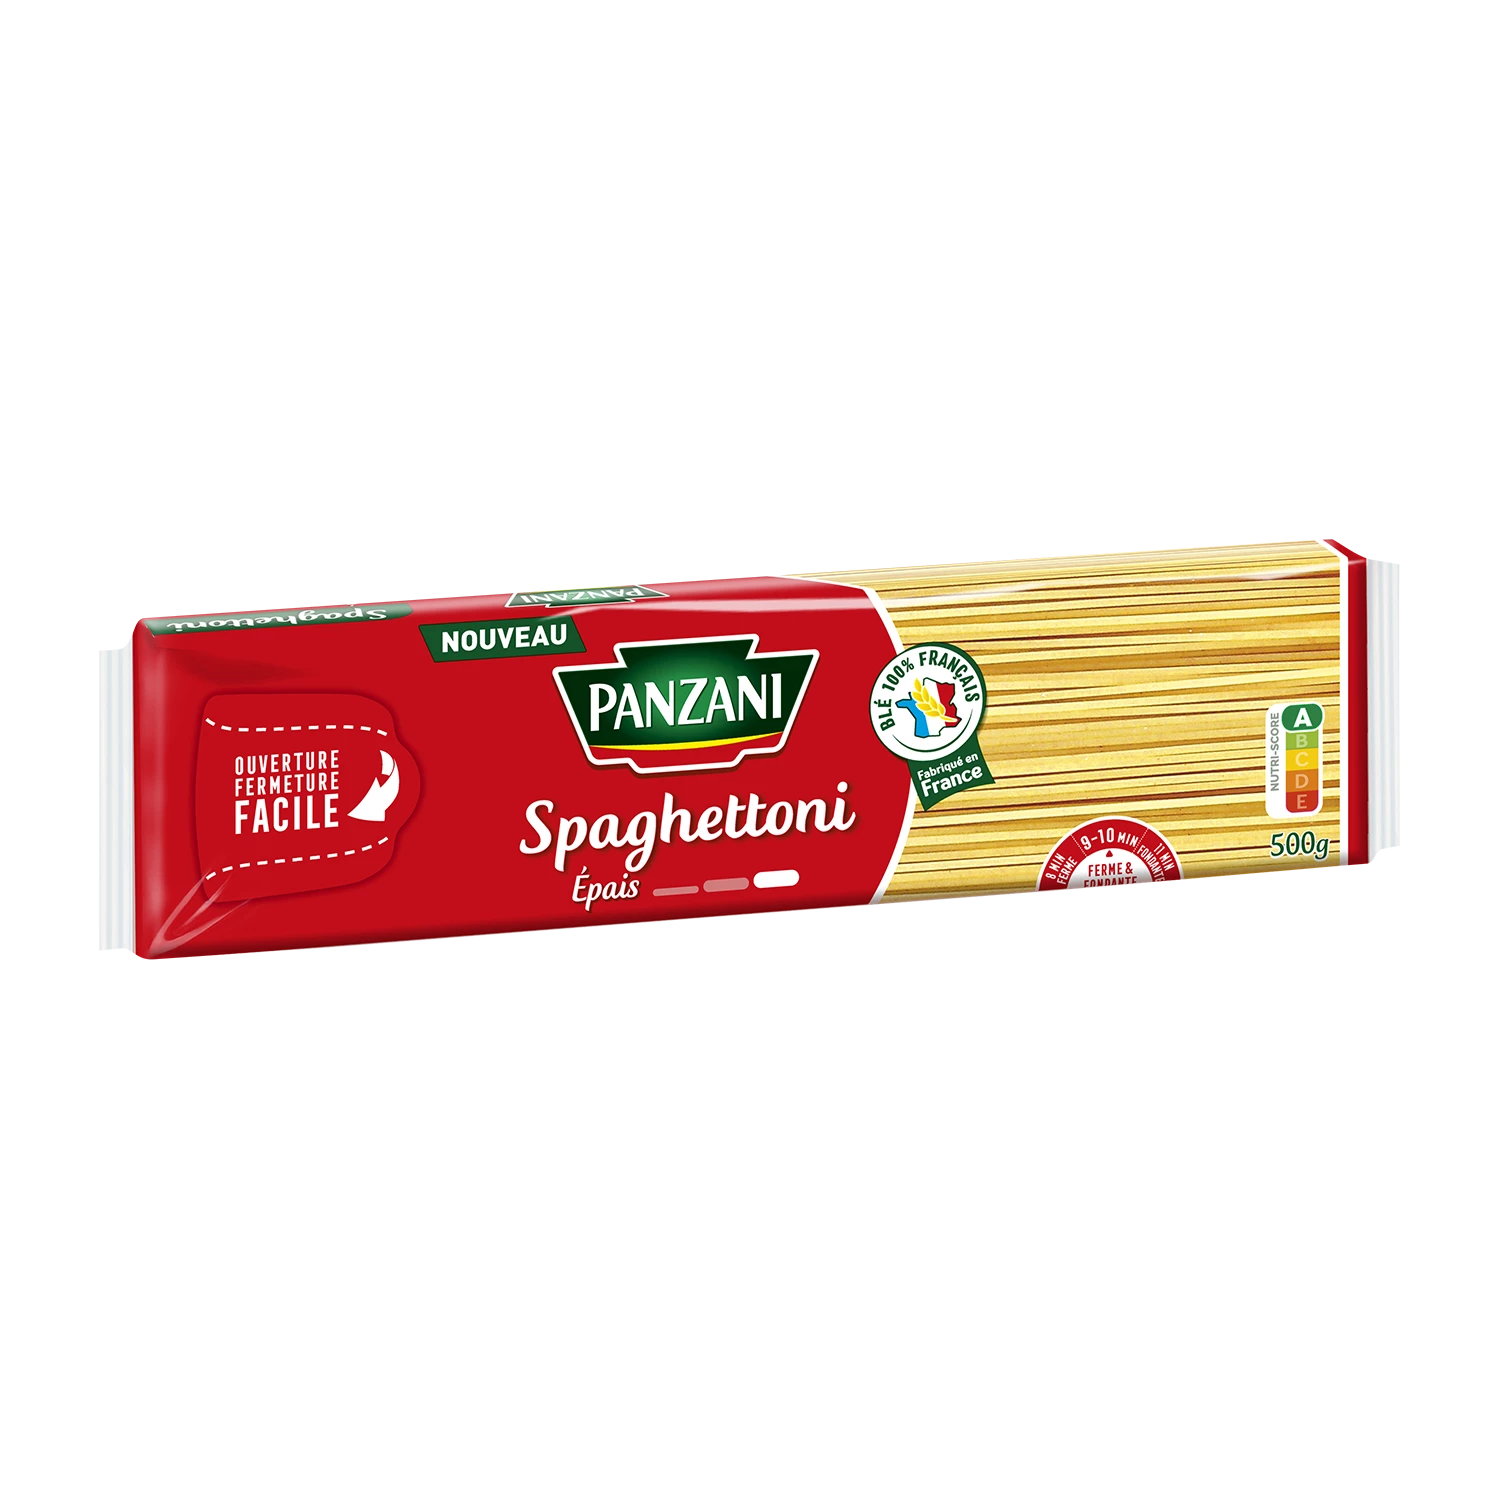 Panzani Spaghetti 500g